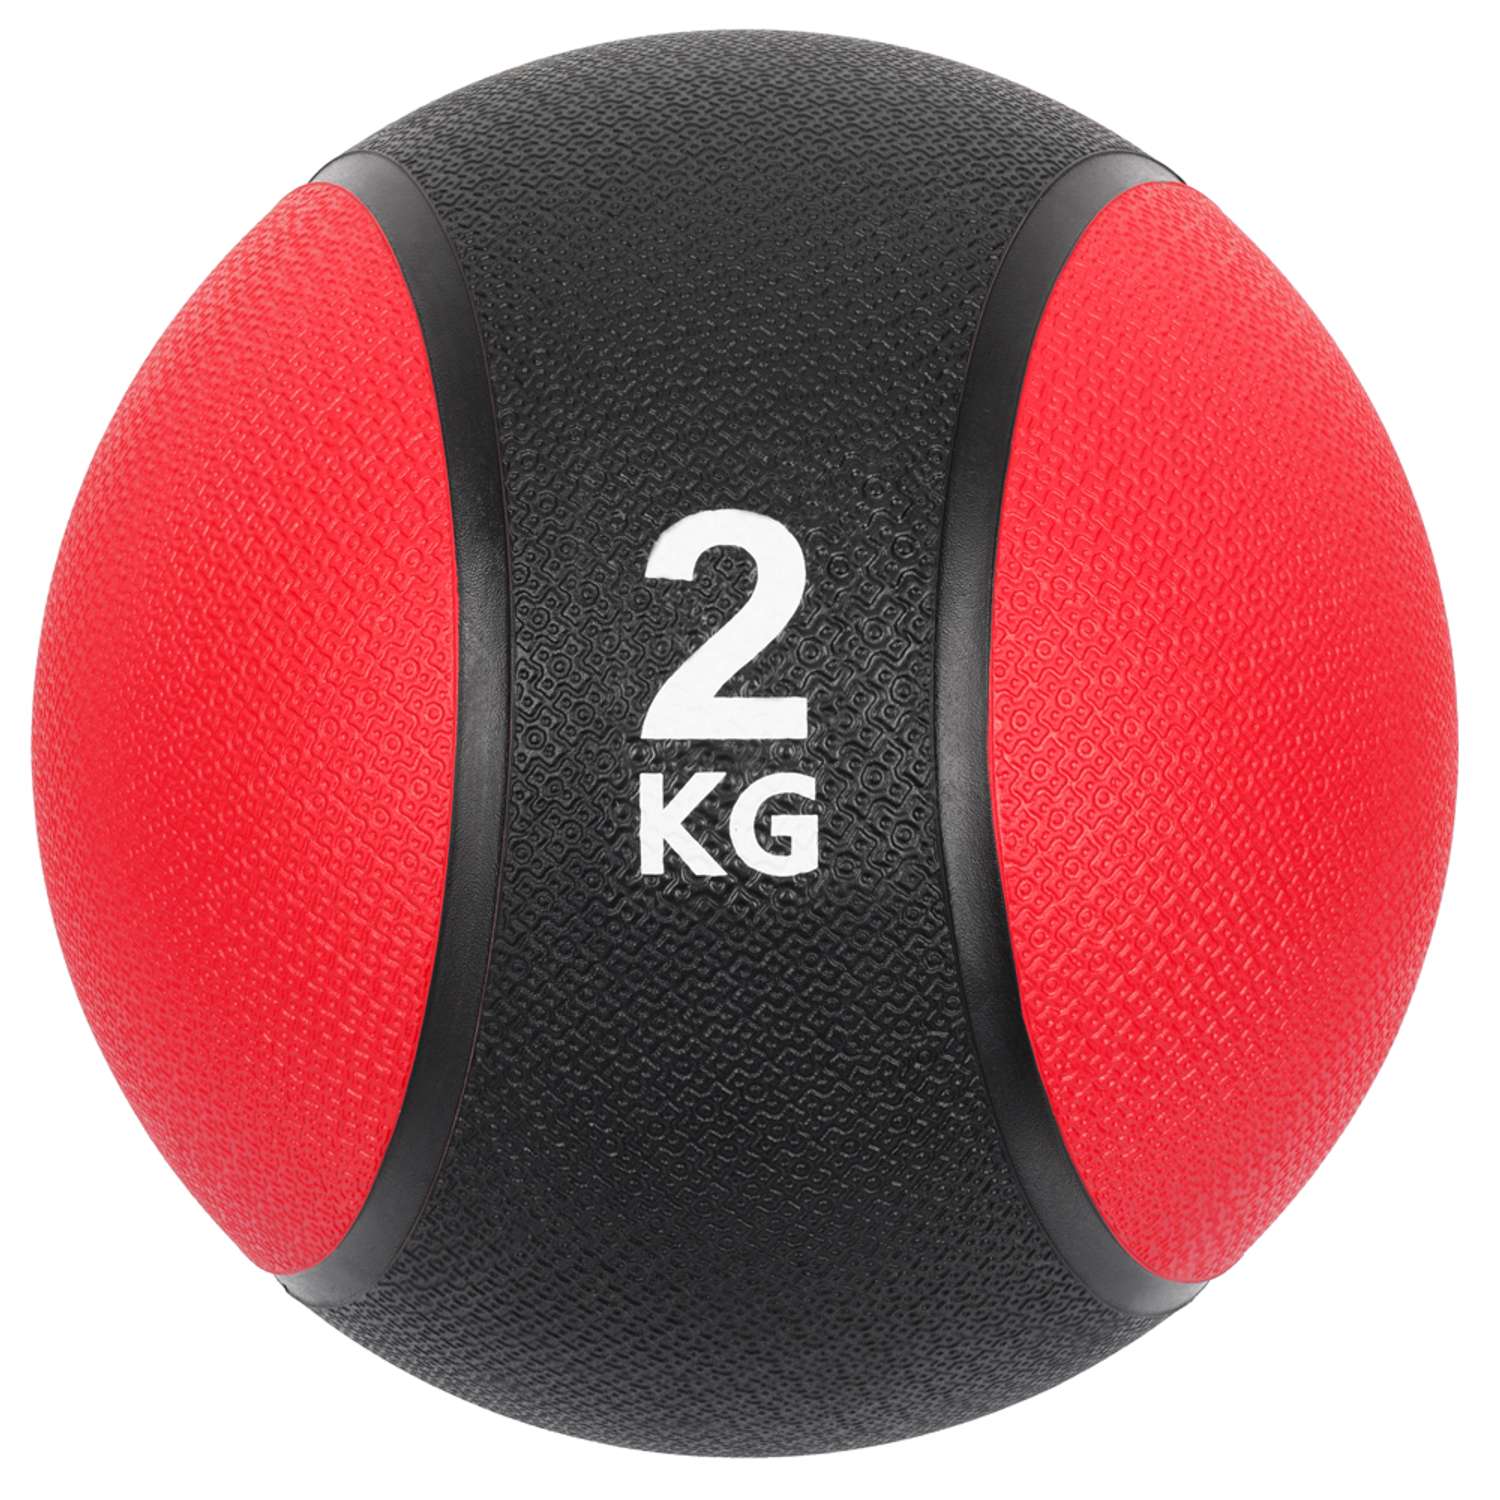 Медбол STRONG BODY медицинский мяч для фитнеса черно-красный 2 кг - фото 3